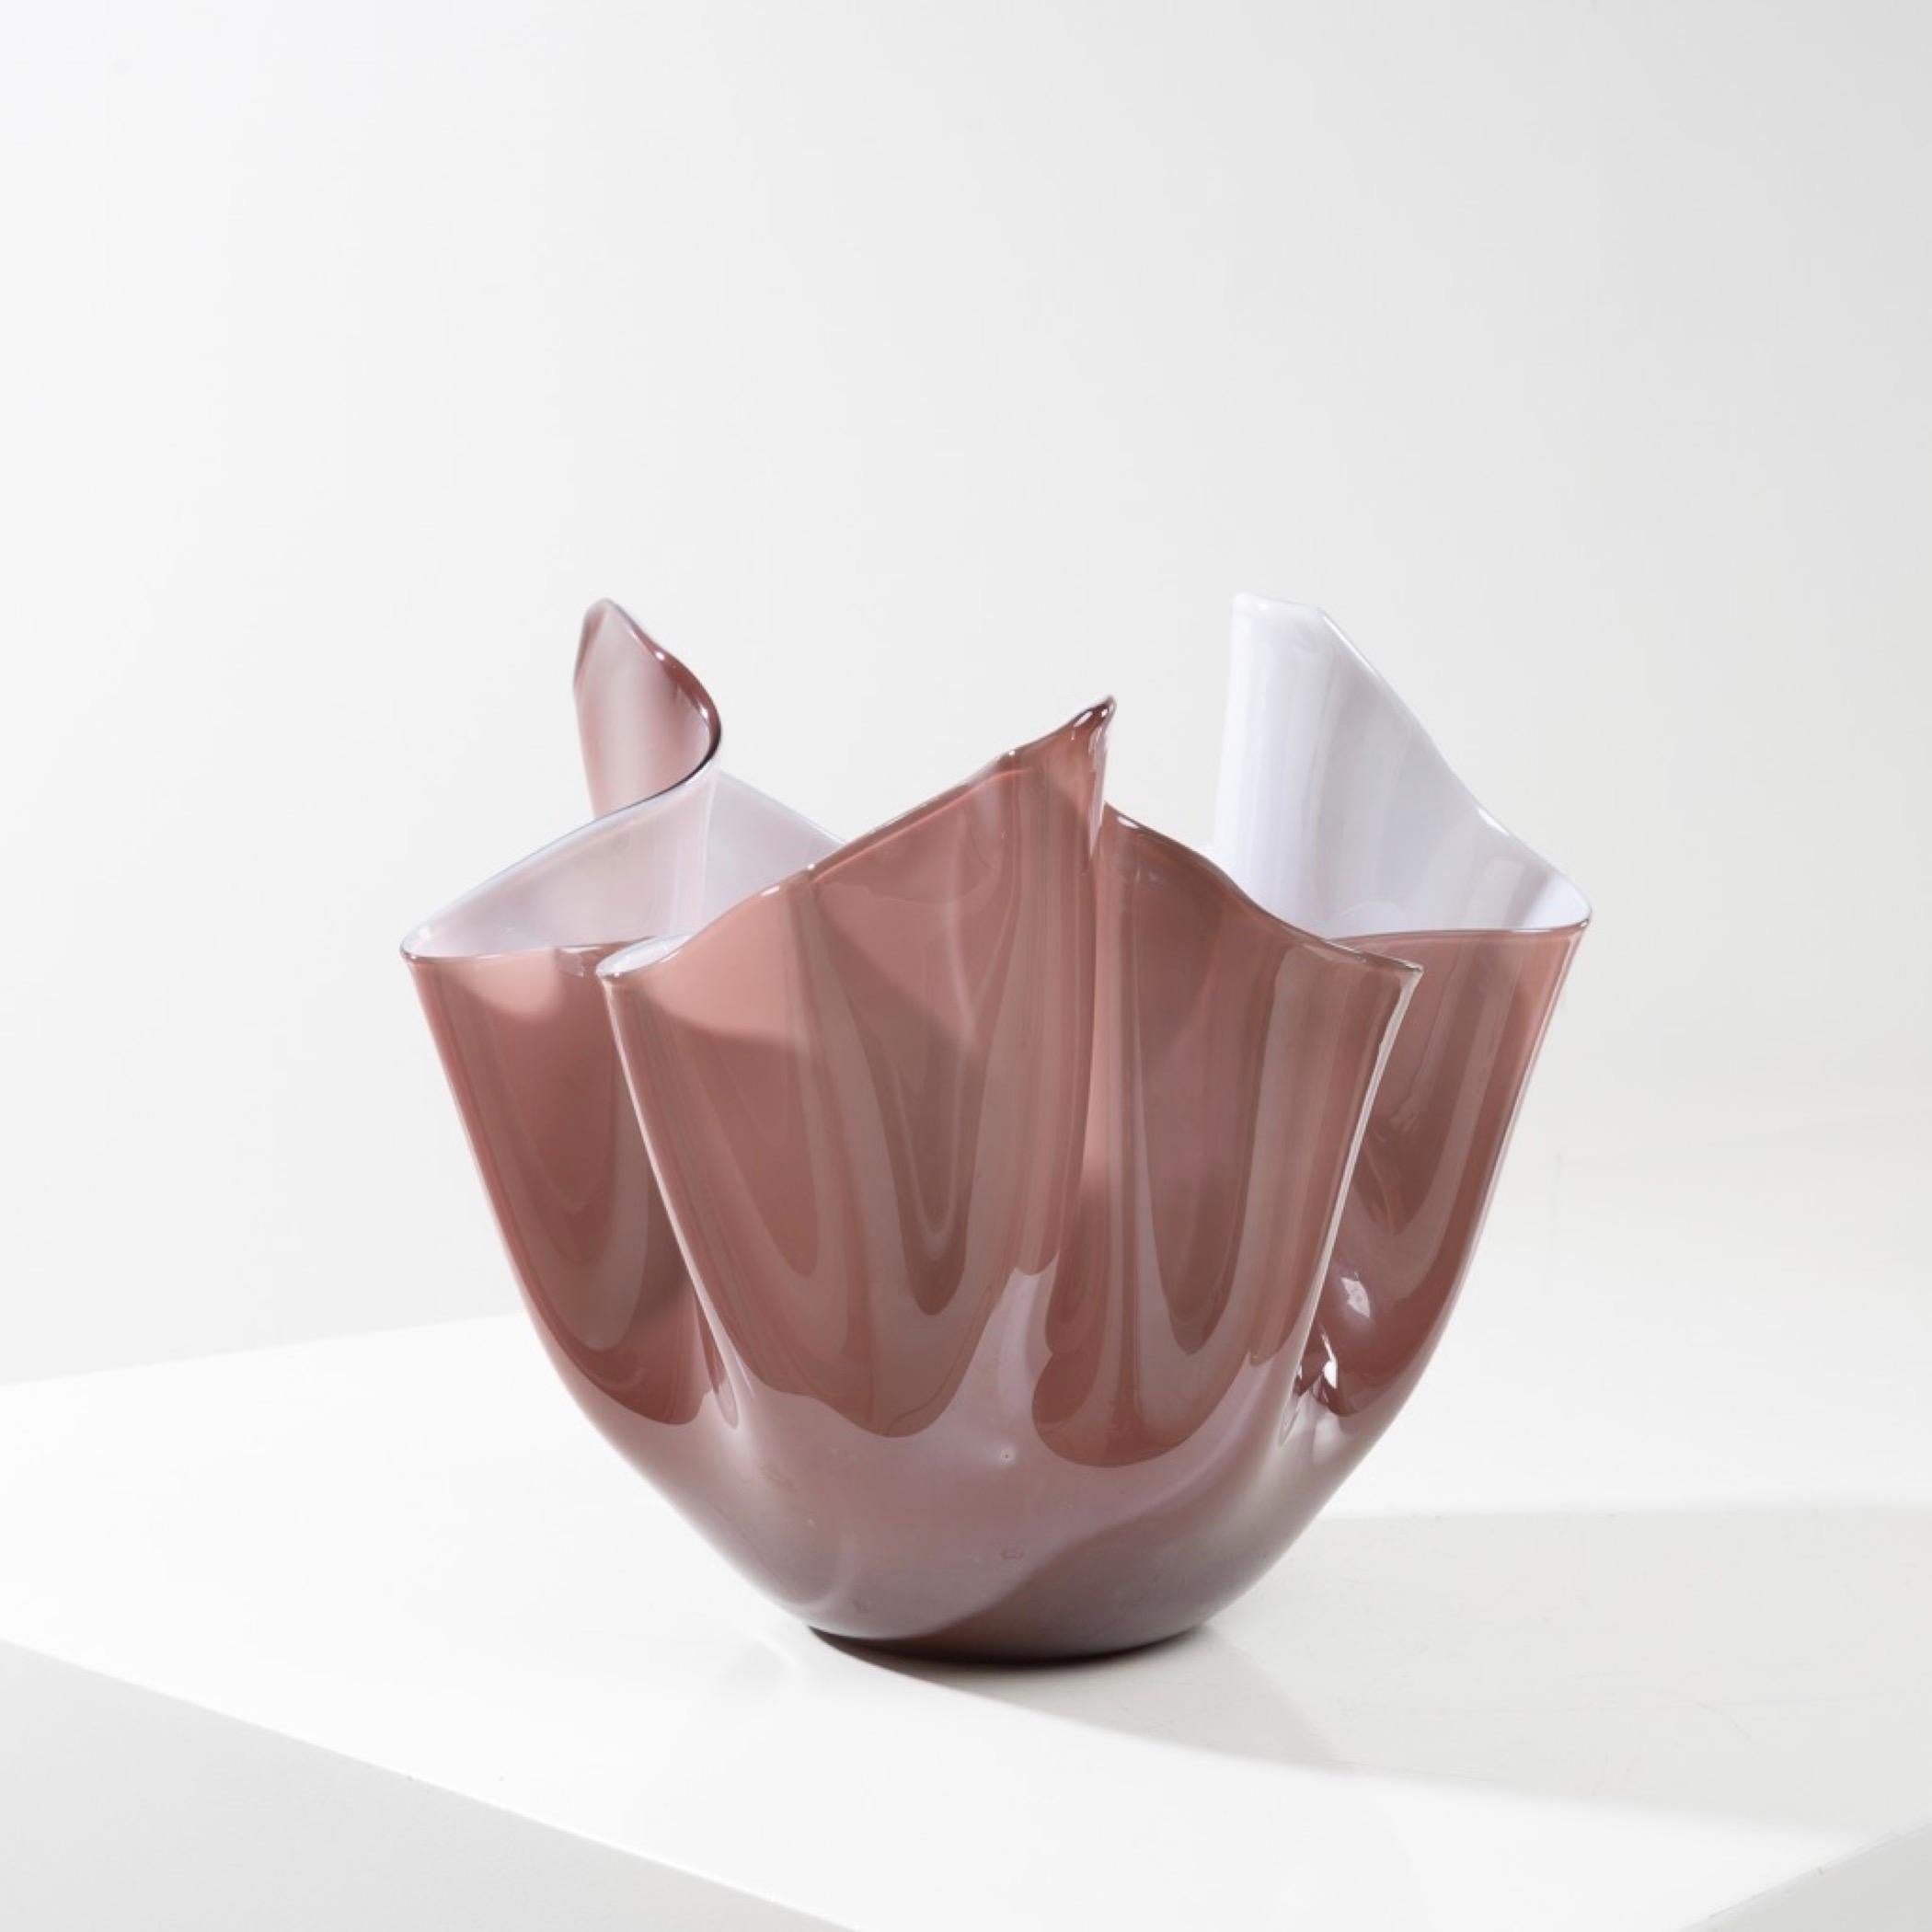 Fazzoletto by Fulvio Bianconi – Handkerchief vase – Venini Murano In Good Condition For Sale In Brussels, BE